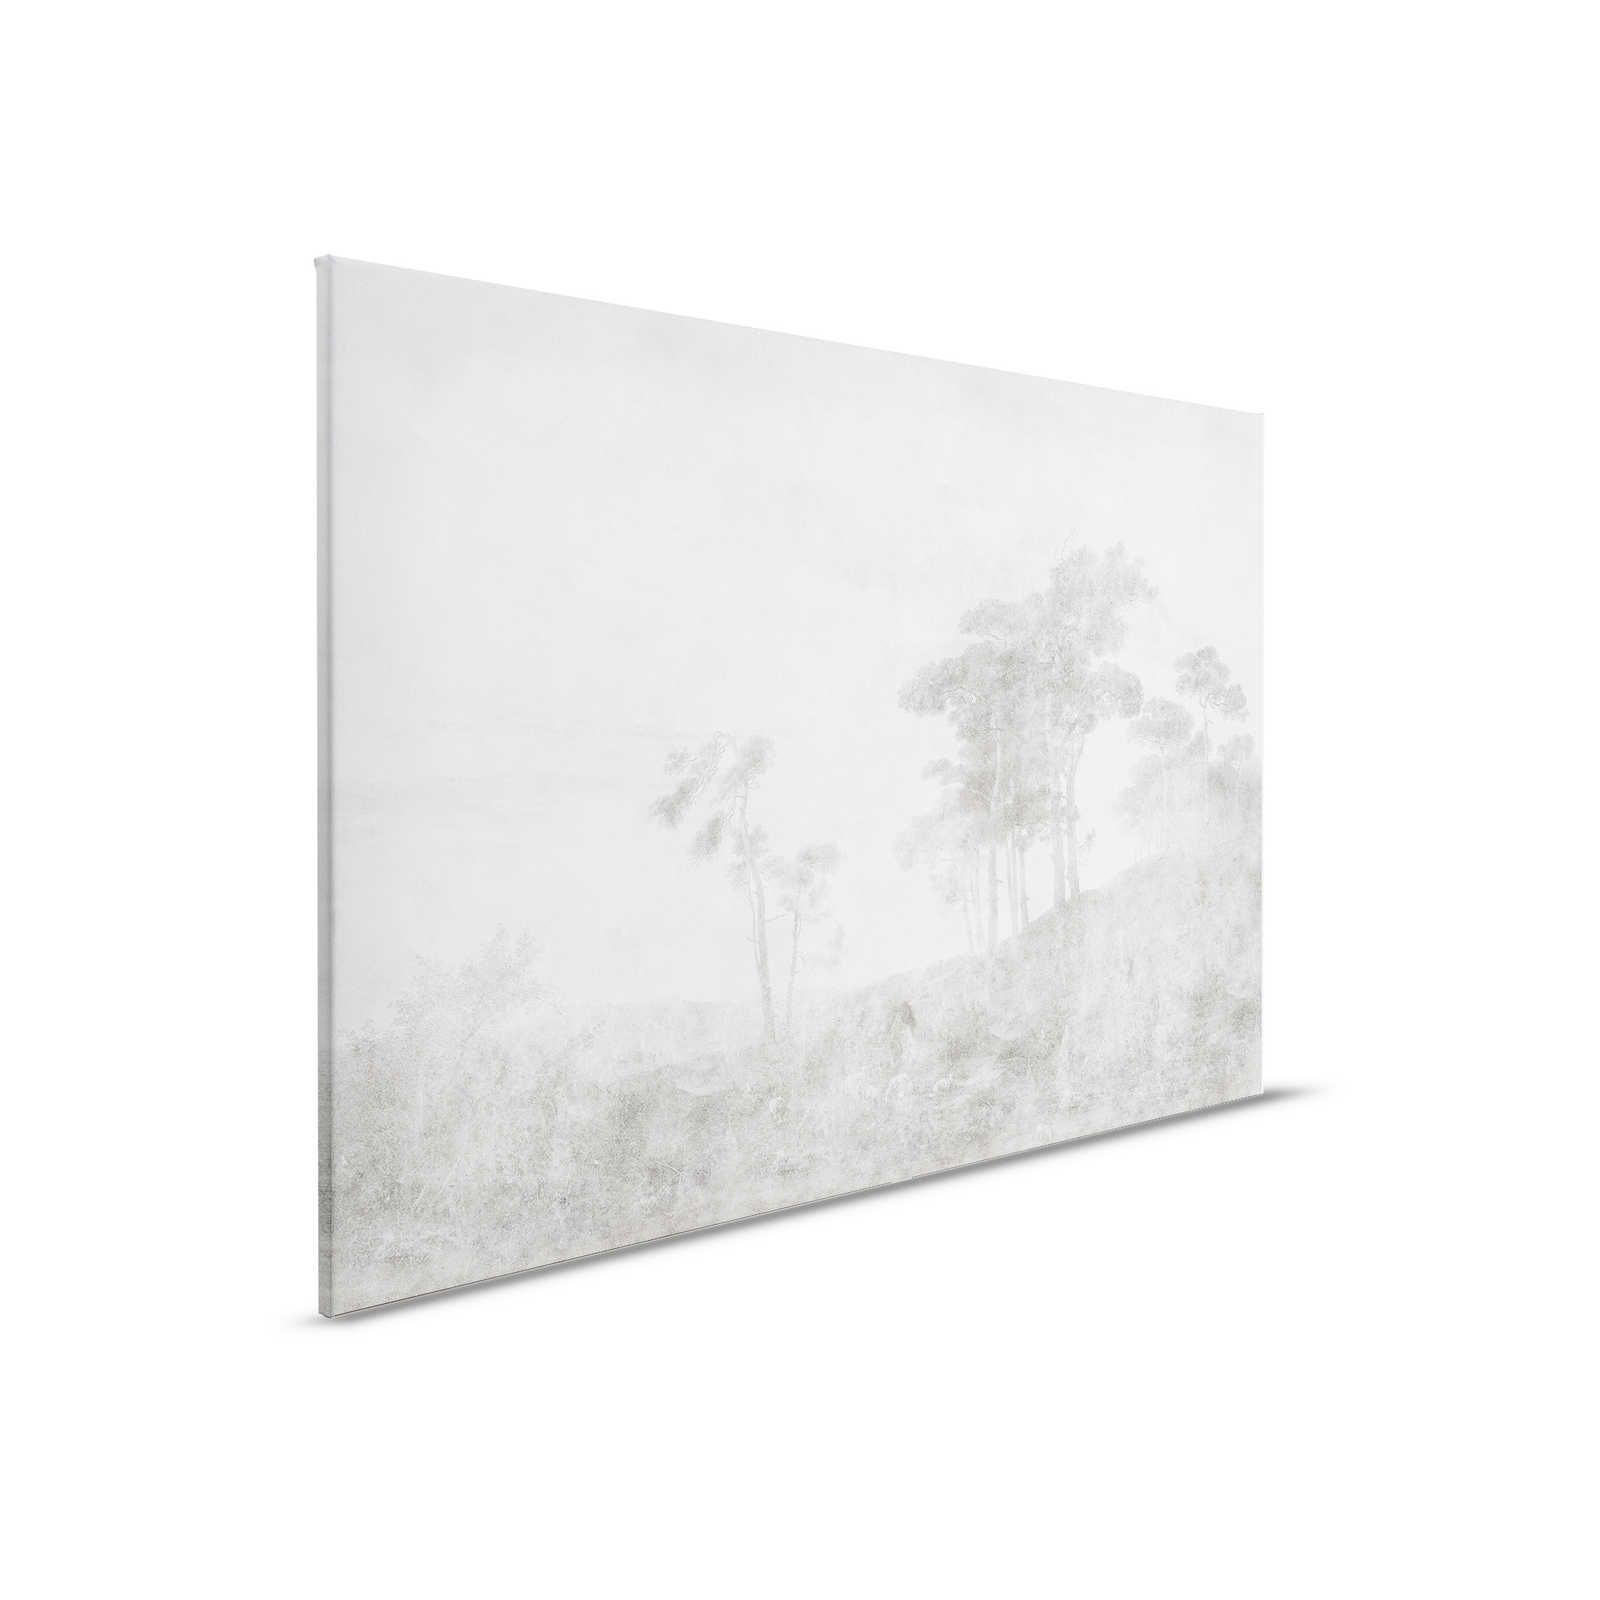 Romantic Grove 2 - Landscape Canvas Painting Vintage Style - 0.90 m x 0.60 m
